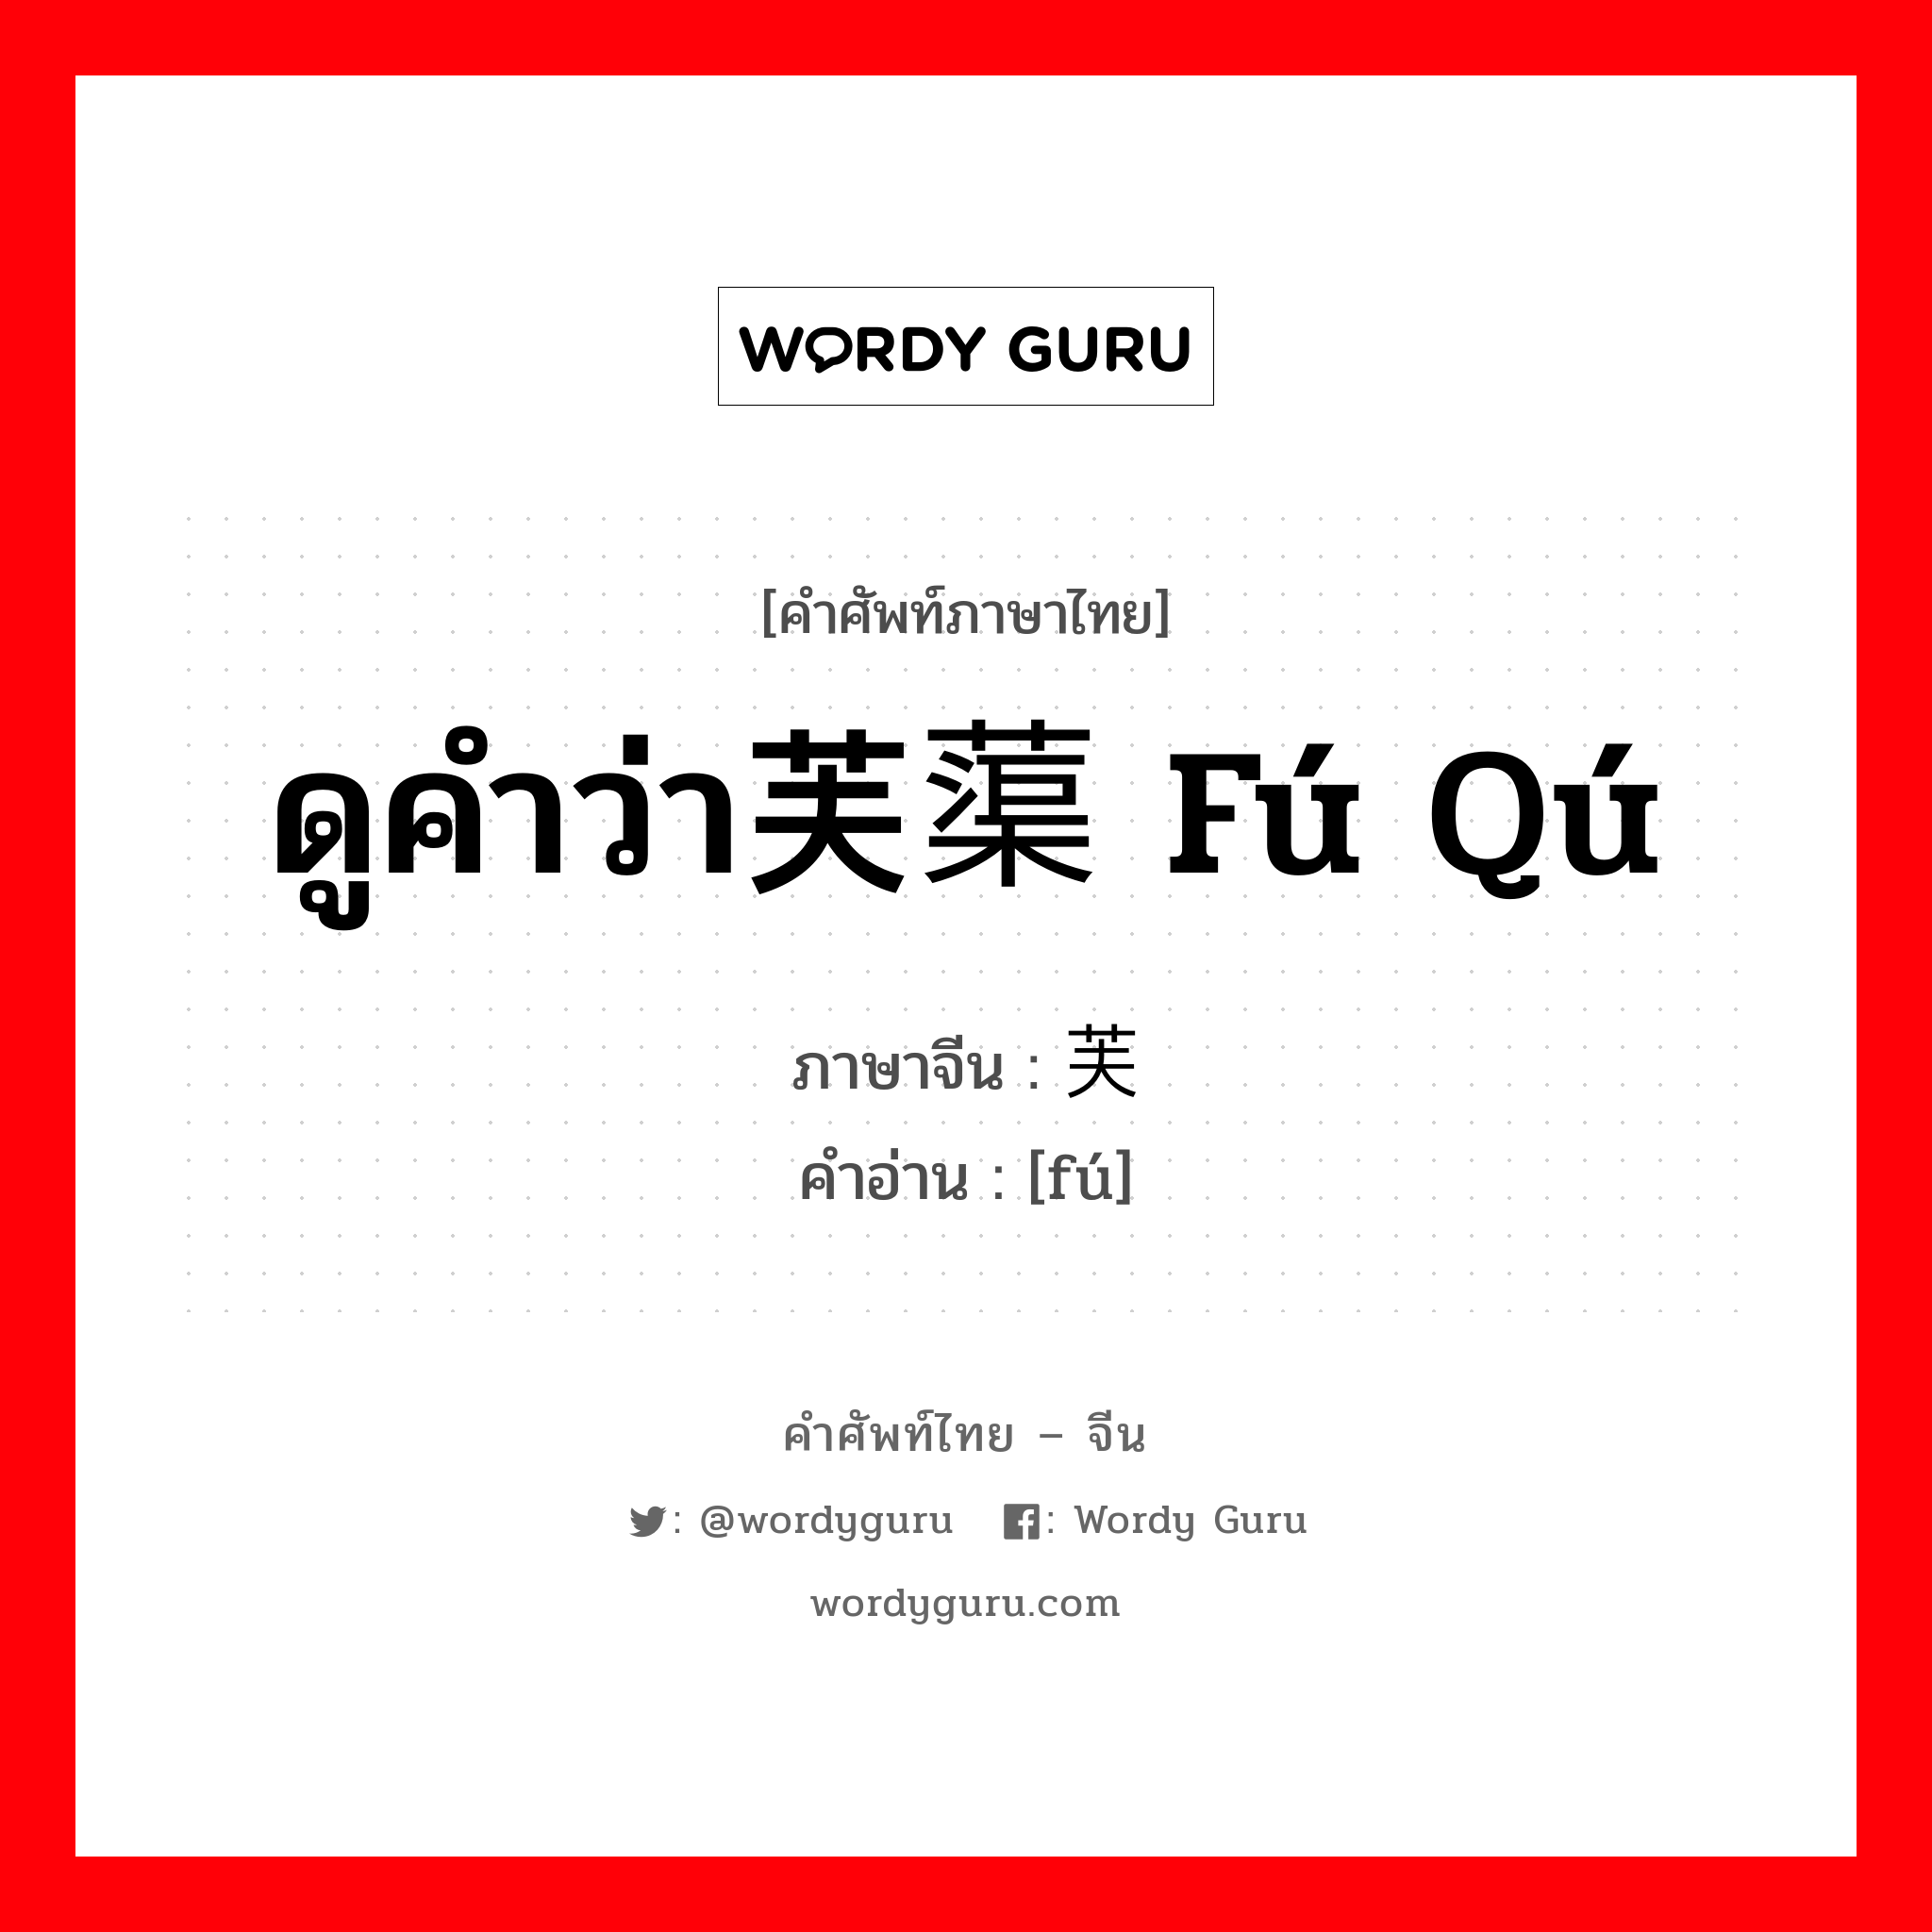 ดูคำว่า芙蕖 fú qú ภาษาจีนคืออะไร, คำศัพท์ภาษาไทย - จีน ดูคำว่า芙蕖 fú qú ภาษาจีน 芙 คำอ่าน [fú]